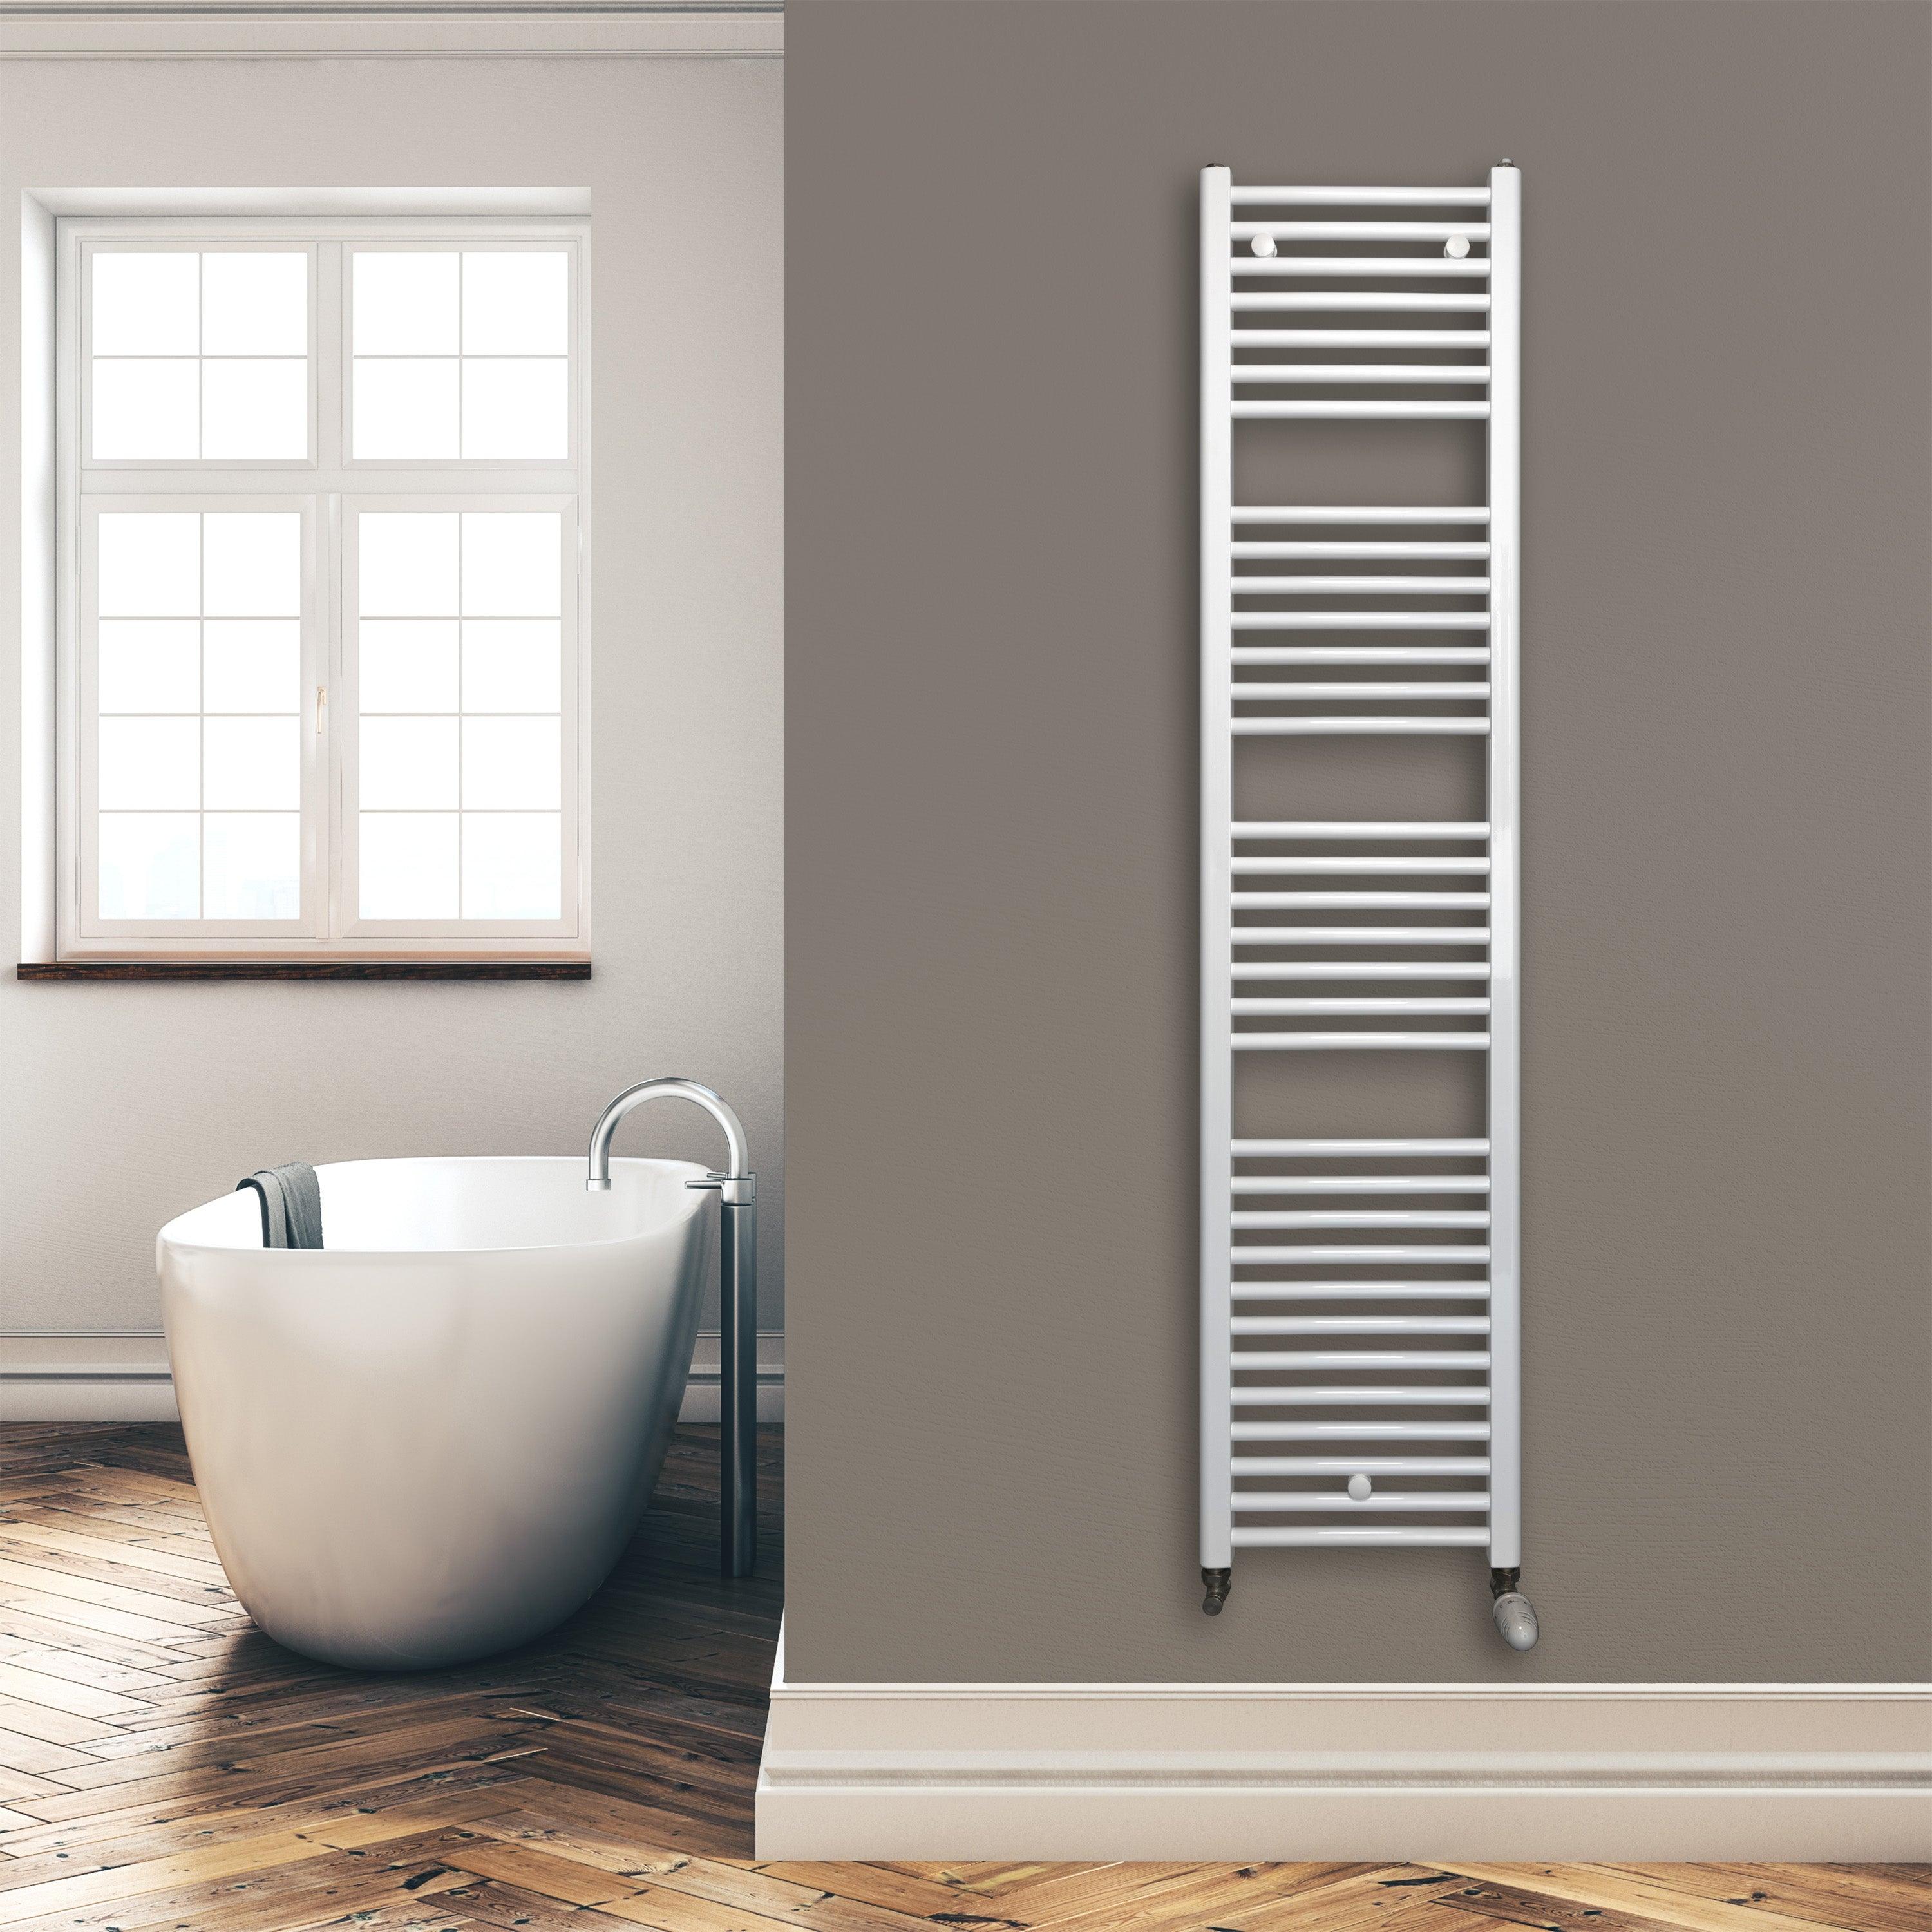 Badheizkörper 1732 x 400 mm gerade mit Standardanschluss Handtuchhalter Badezimmer Heizung Handtuchwärmer weiß Montagebeispiel - heizkoerper.shop